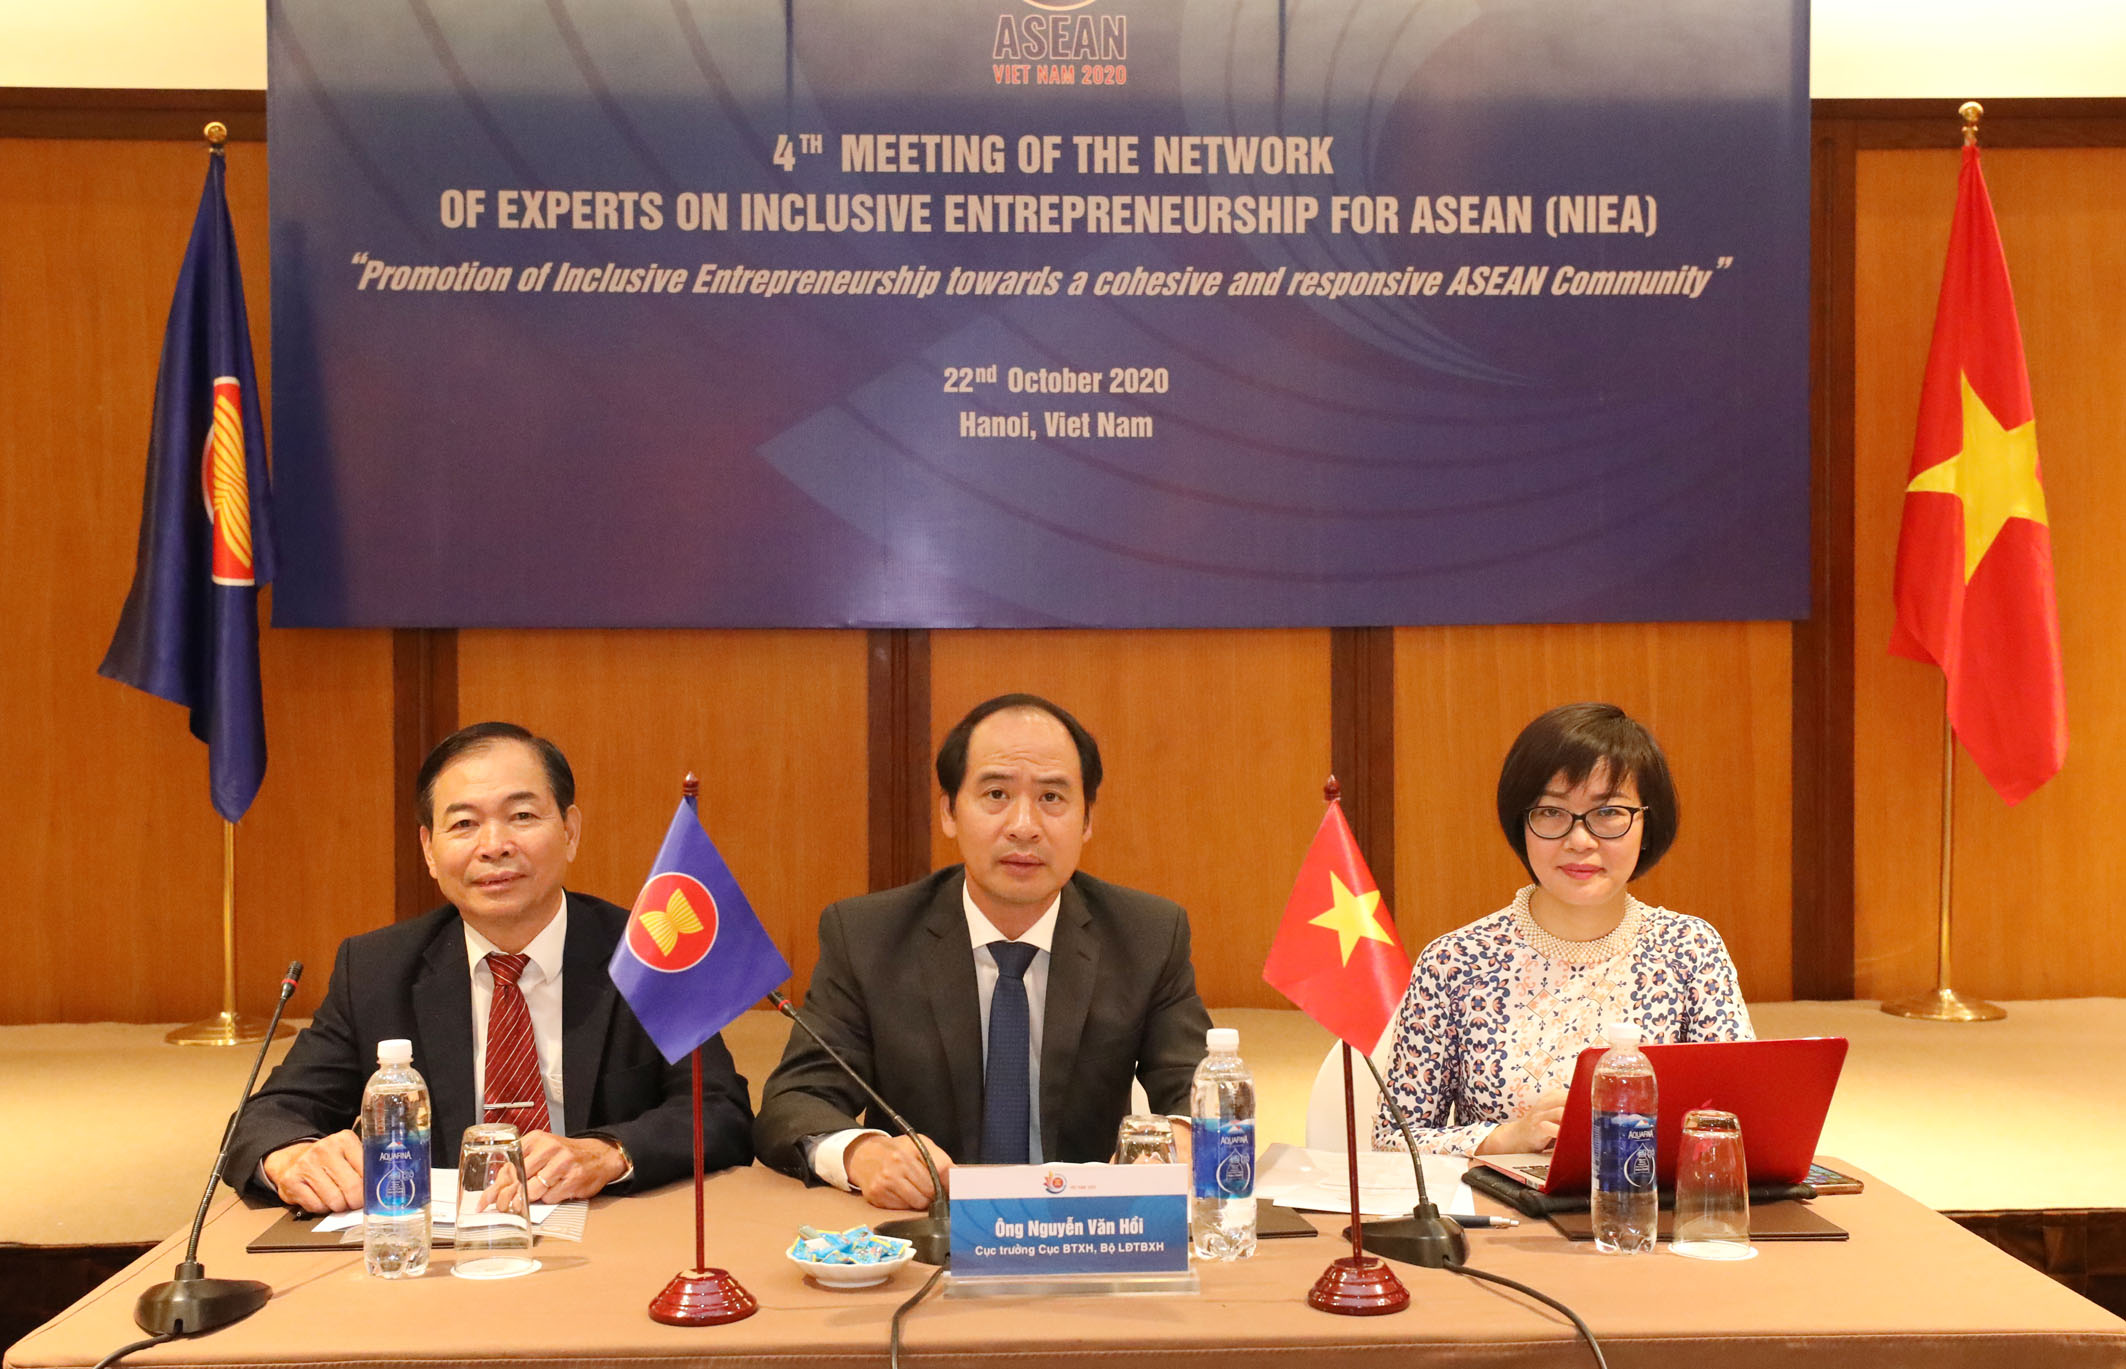 Thúc đẩy doanh nghiệp hòa nhập cho người khuyết tật hướng tới một Cộng đồng ASEAN gắn kết và chủ động thích ứng